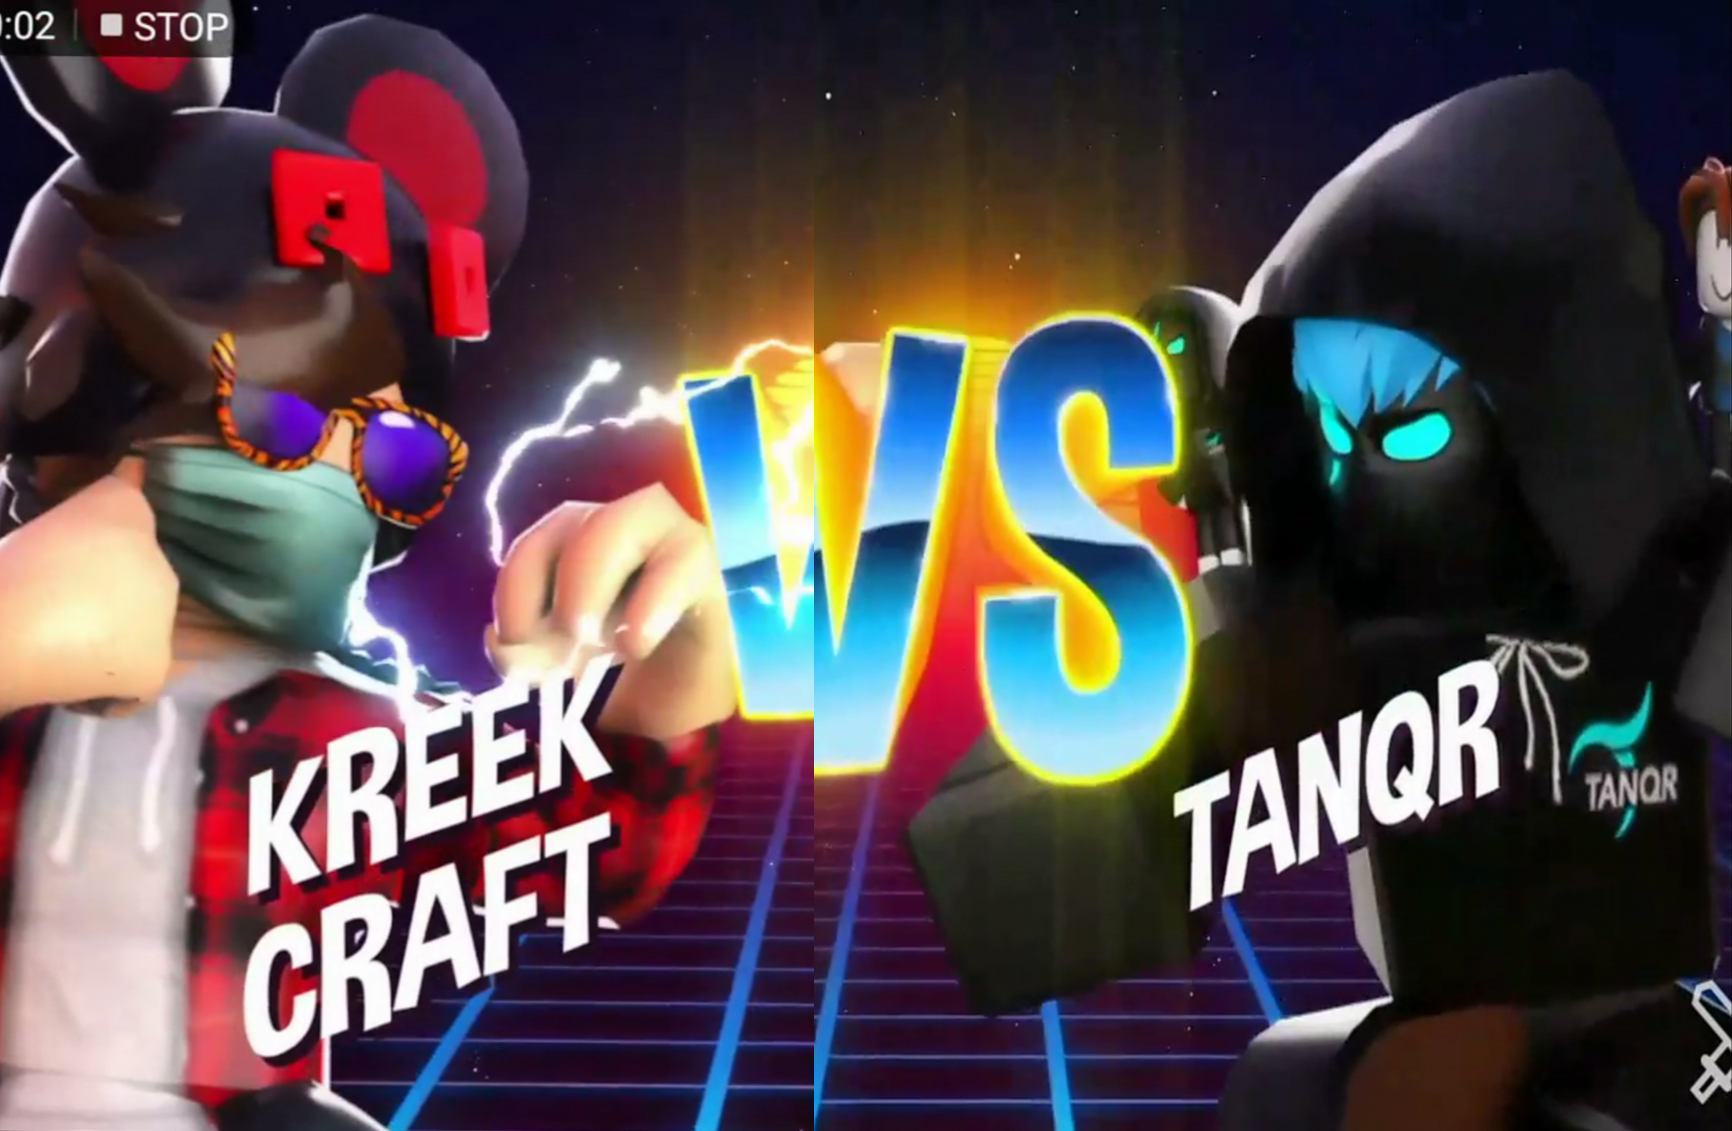 Kreekcraft vs Tanqr rb battles (fanmade) Blank Meme Template